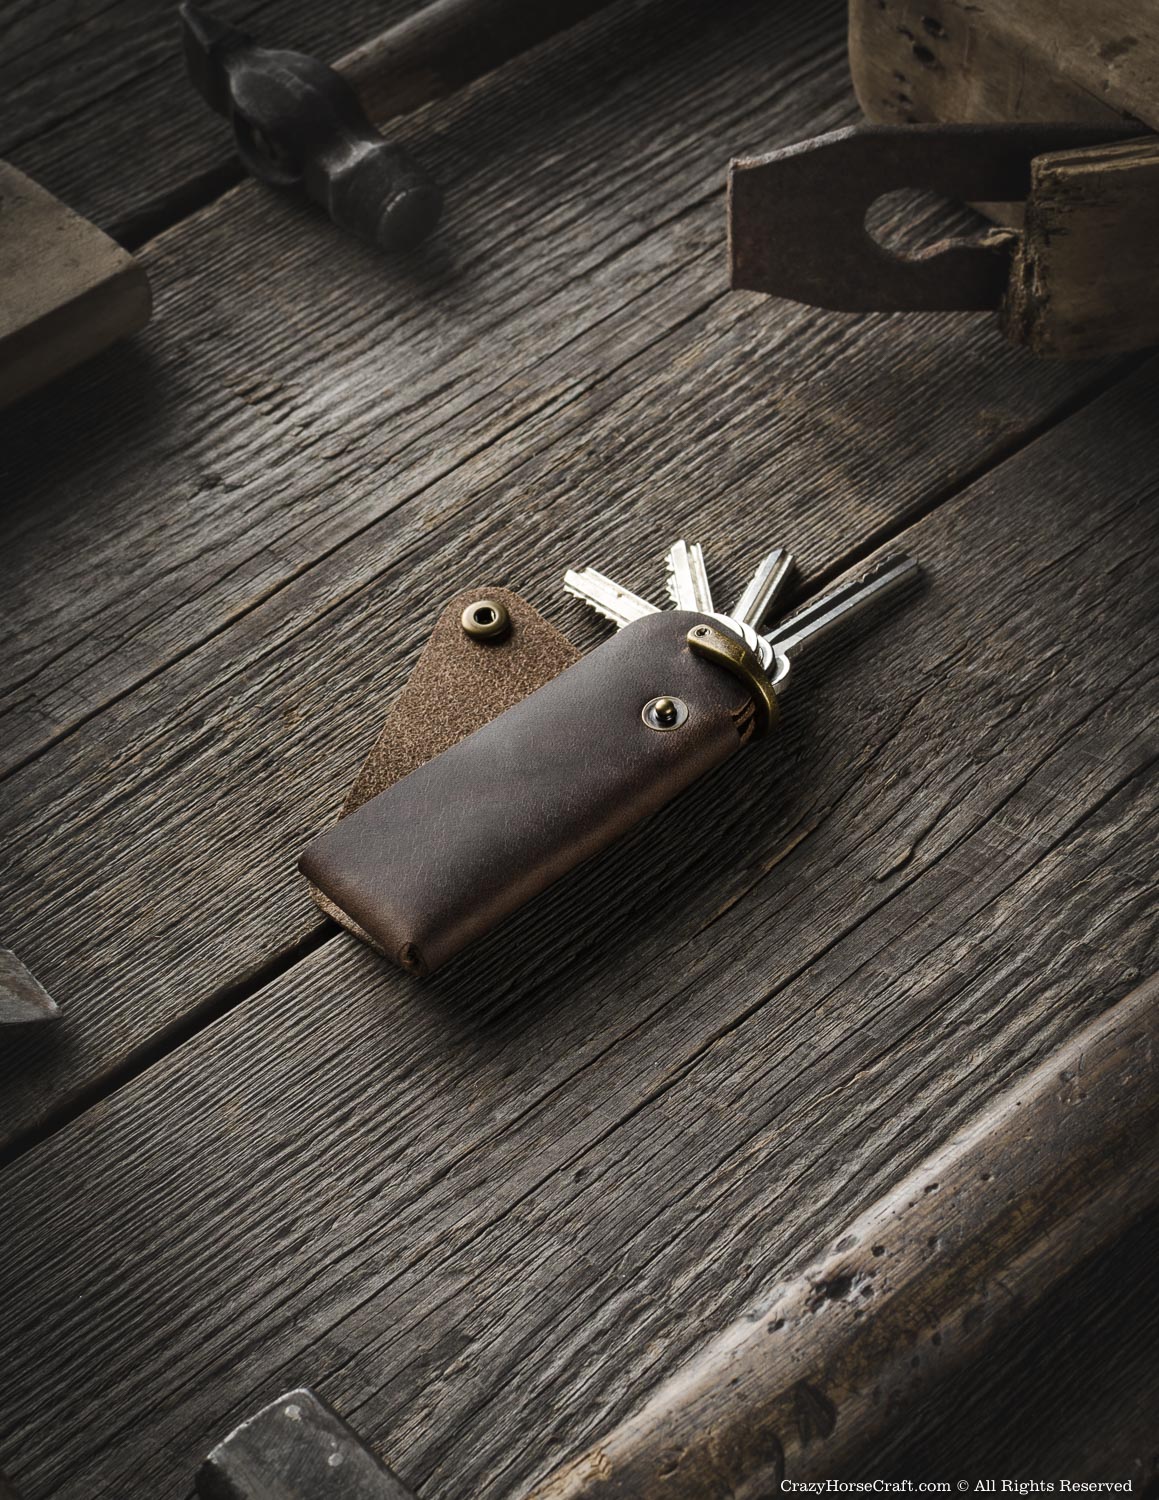 vitronic leather key holder